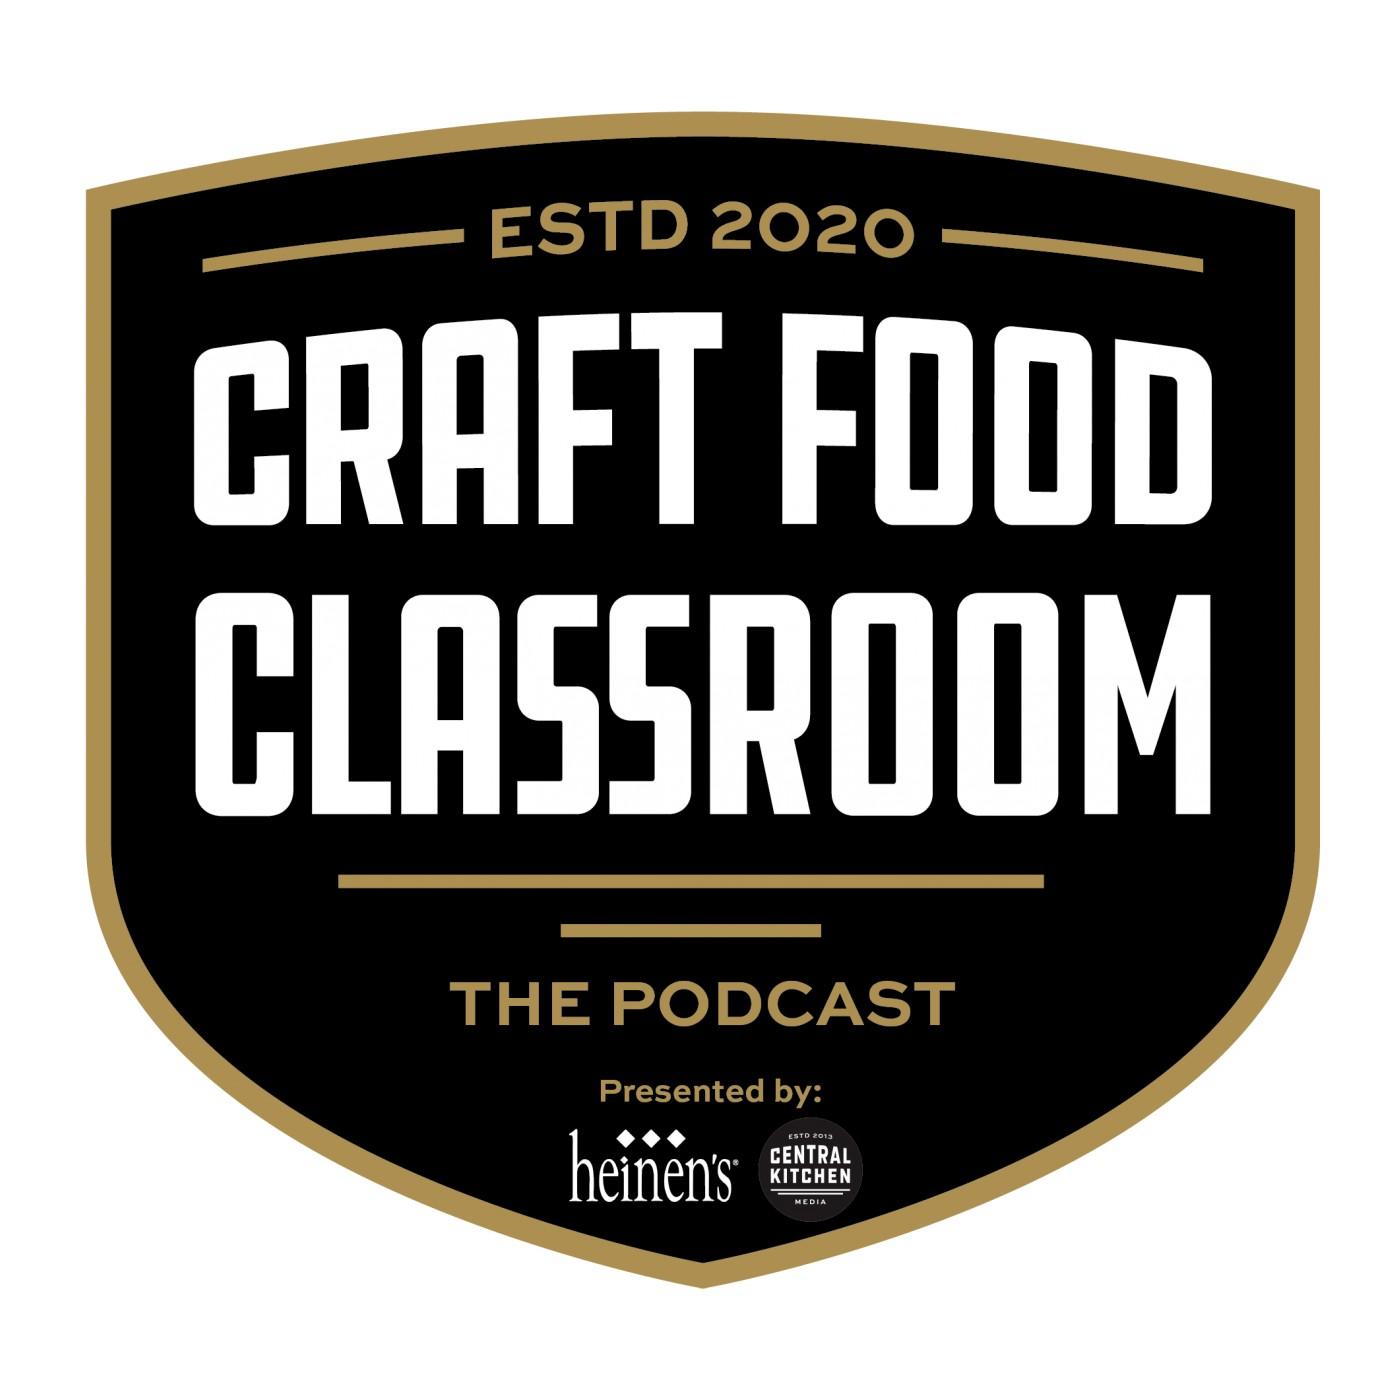 Craft Food Classroom